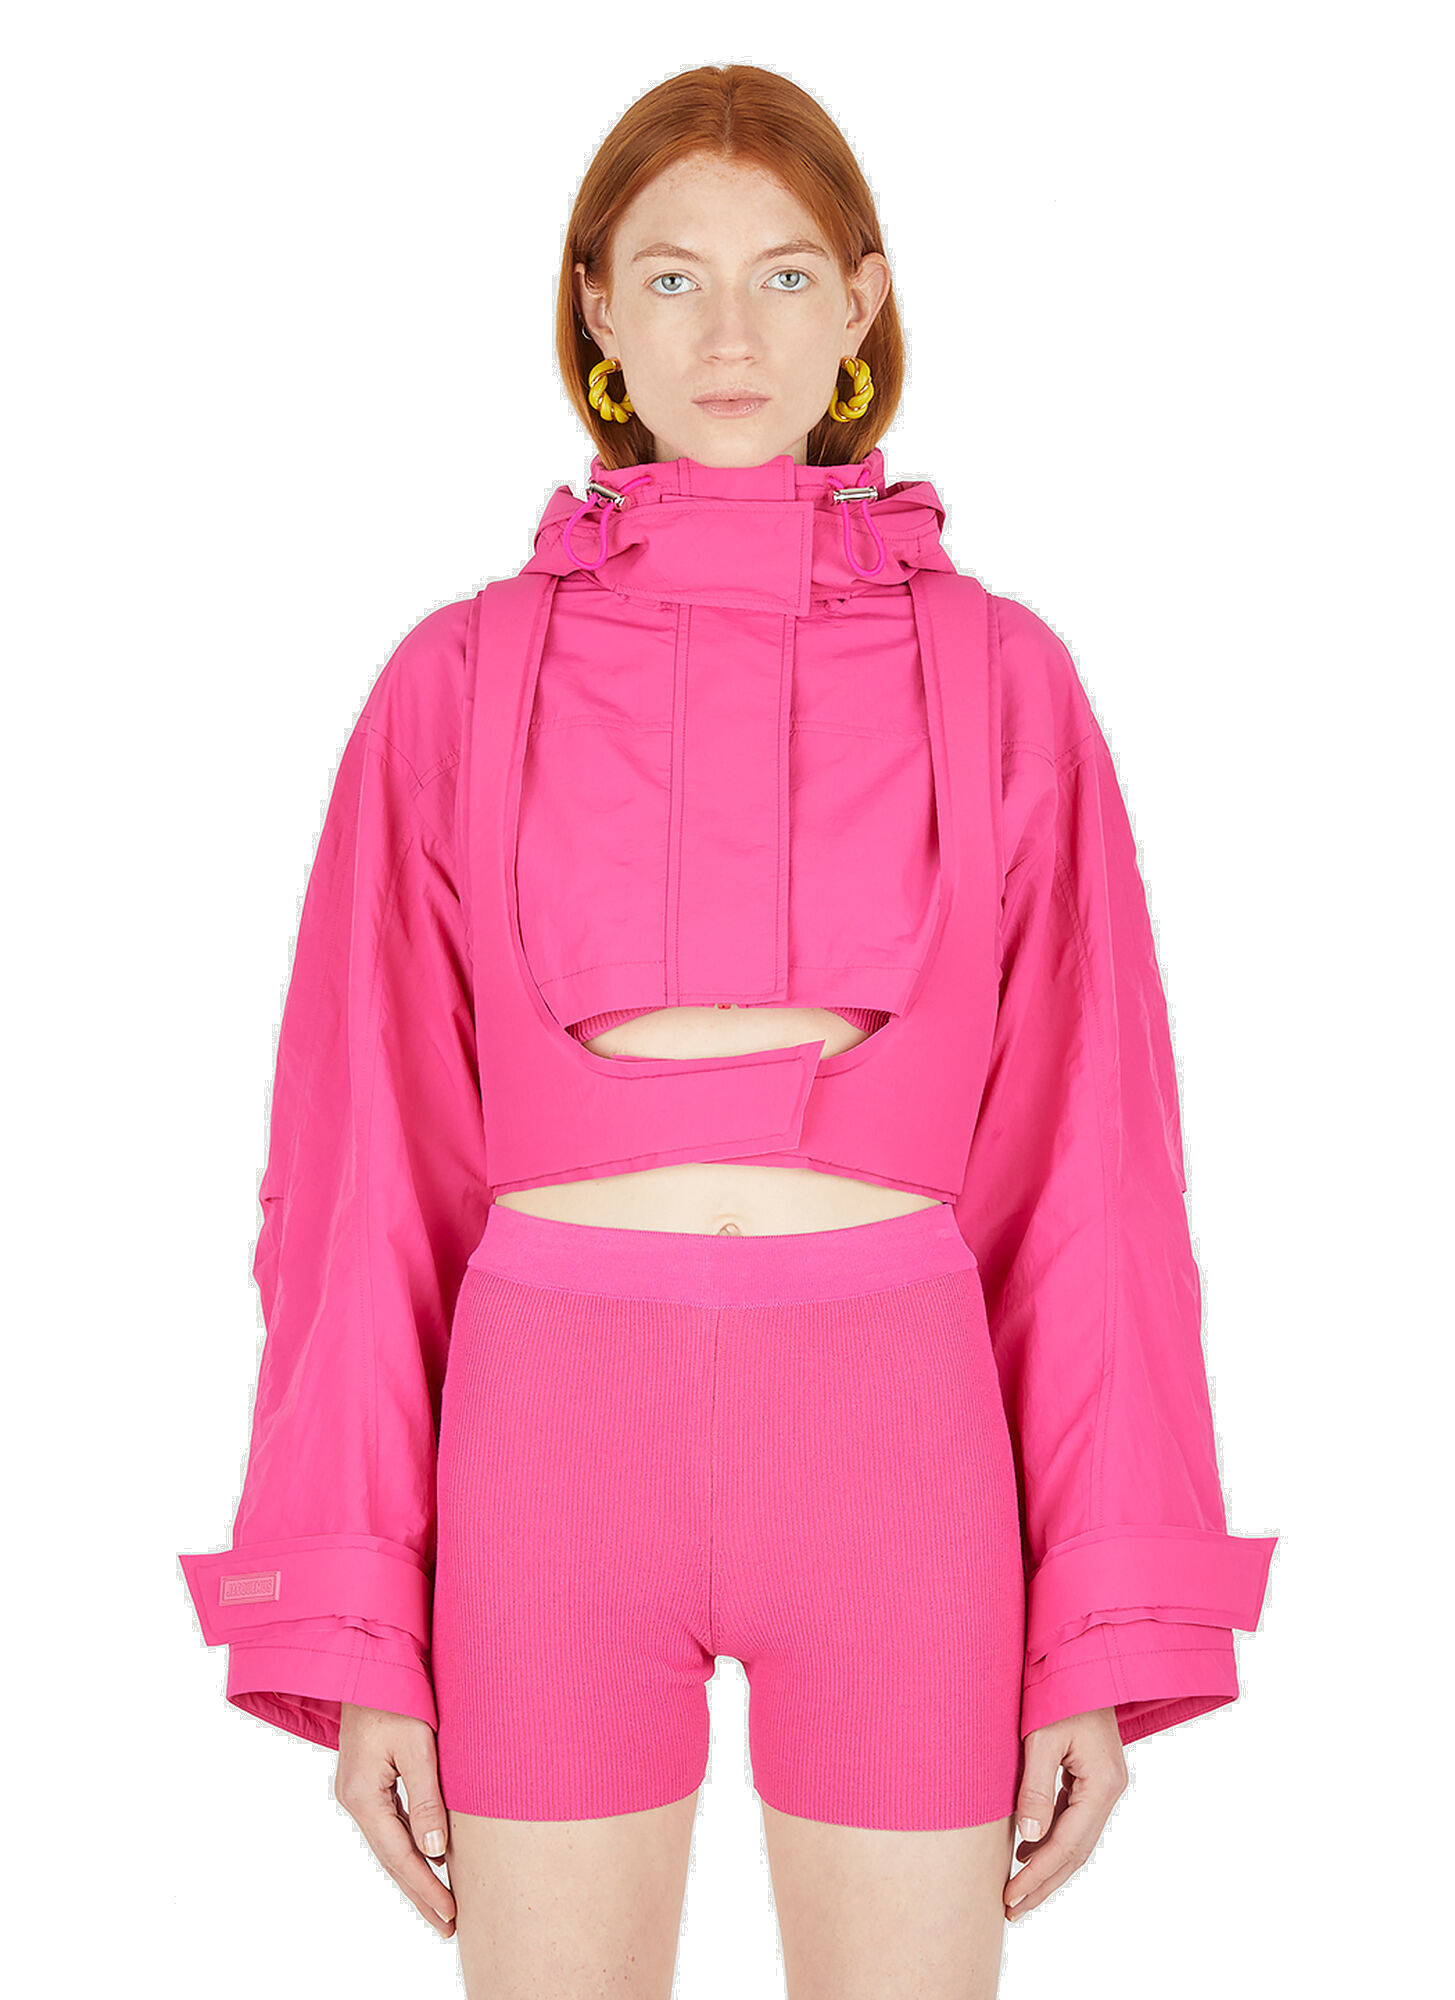 Photo: La Parka Fresa Cropped Jacket in Pink